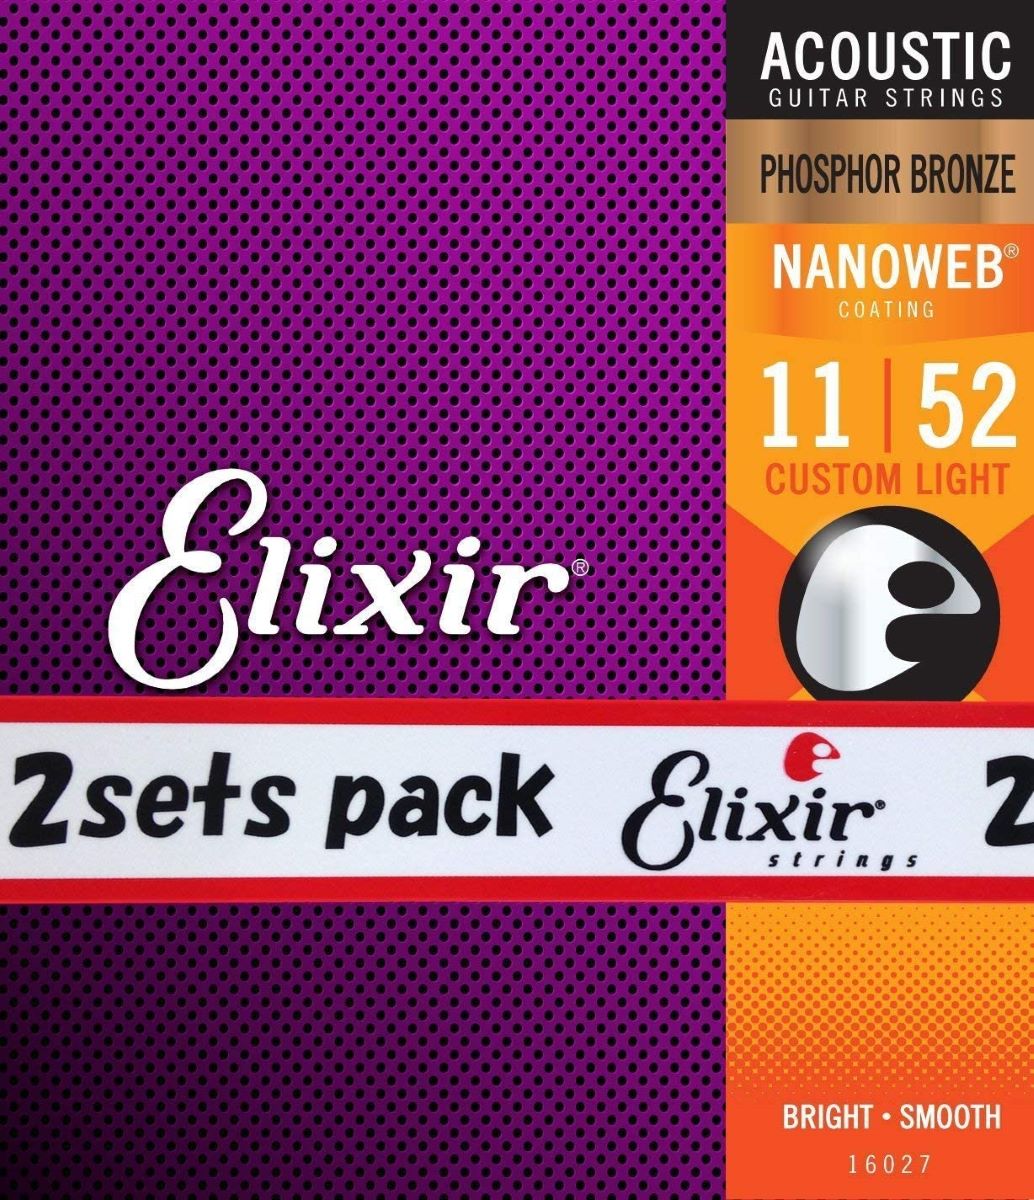 Elixir NANOWEB フォスファーブロンズ 11-52 カスタムライト 2セット #16027 【エリクサー アコースティックギター弦 お買い得な2パック】